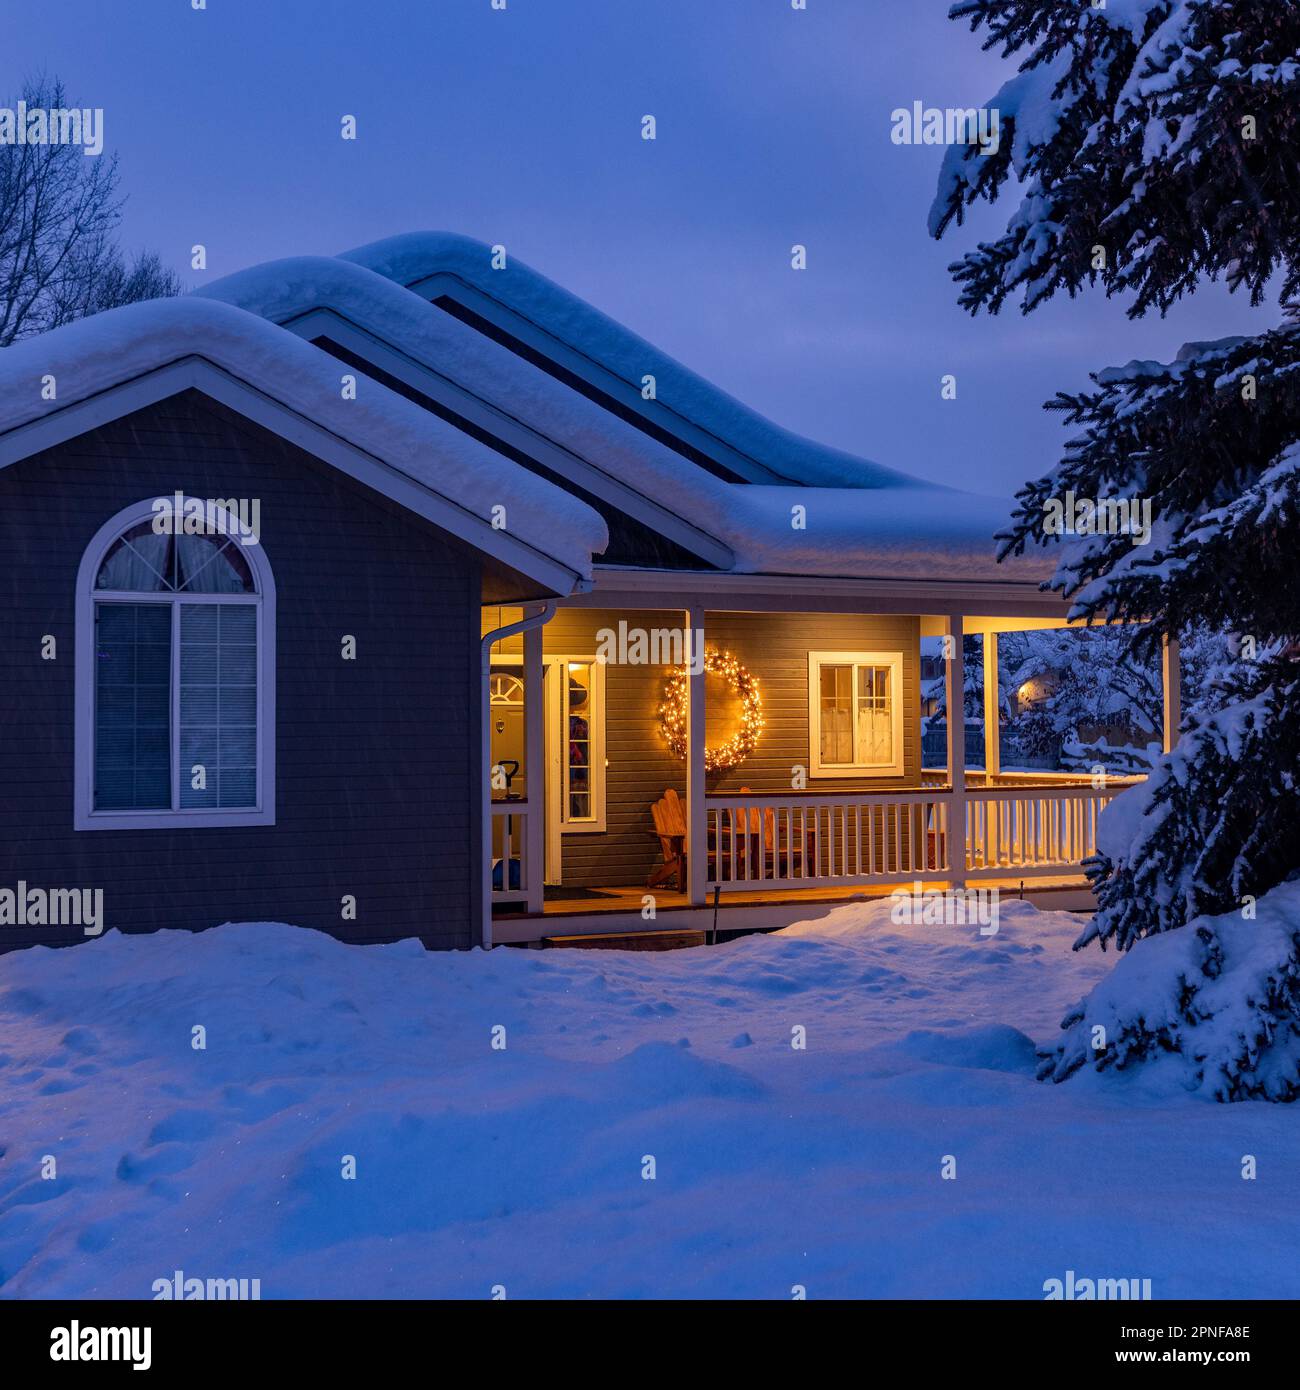 États-Unis, Idaho, Bellevue, maison couverte de neige avec lumières de porche Banque D'Images